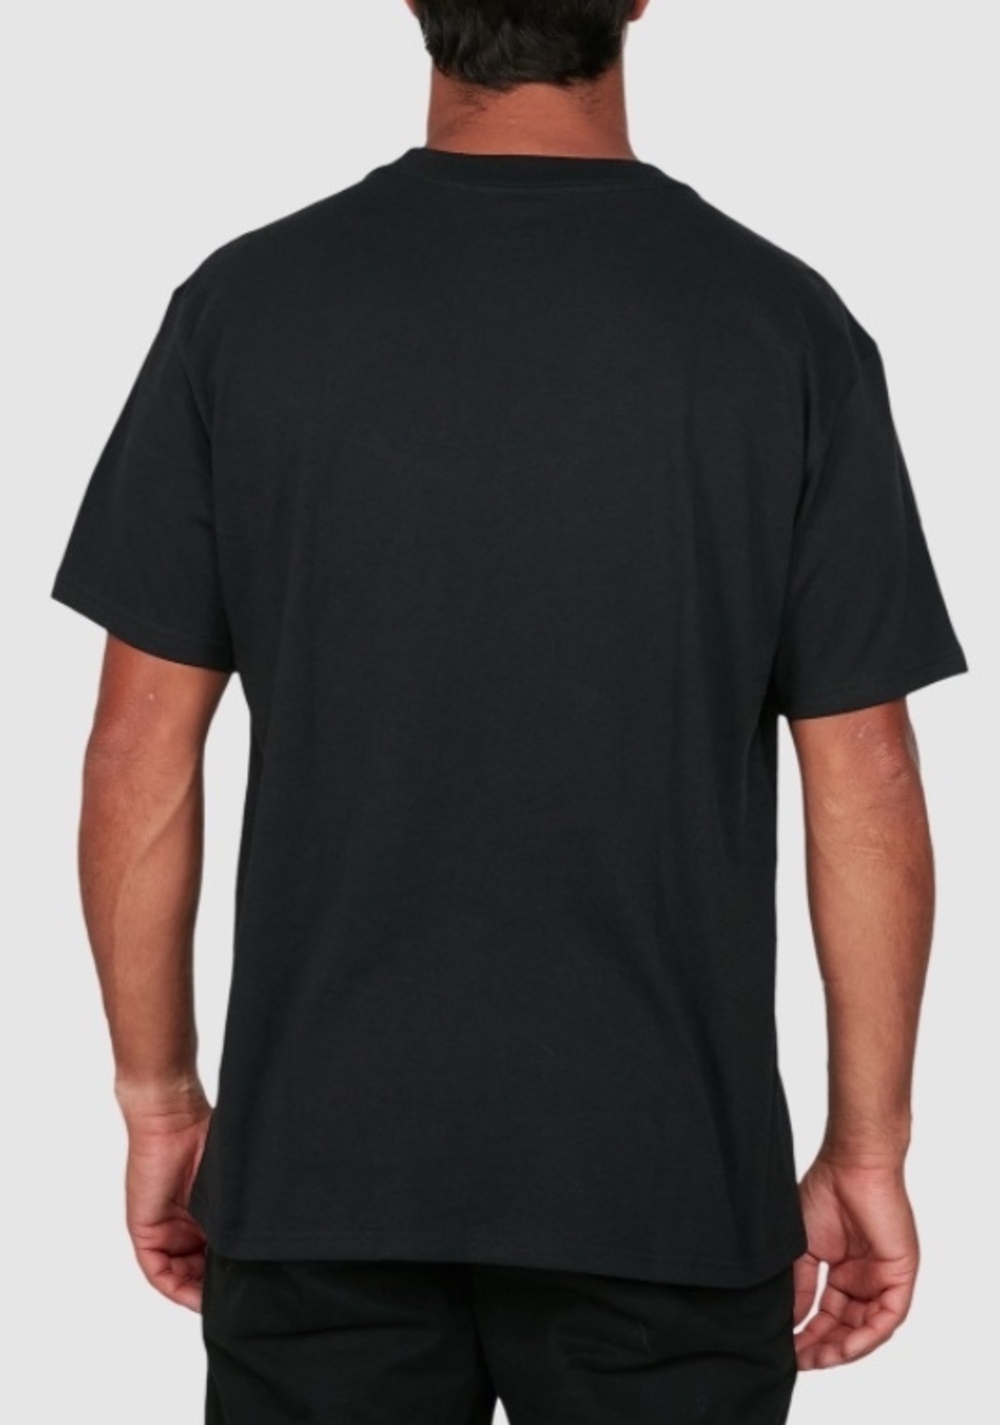 RVCA Bakervca Ransom Short Sleeve BLACK T-Shirt Tee Ruca Baker